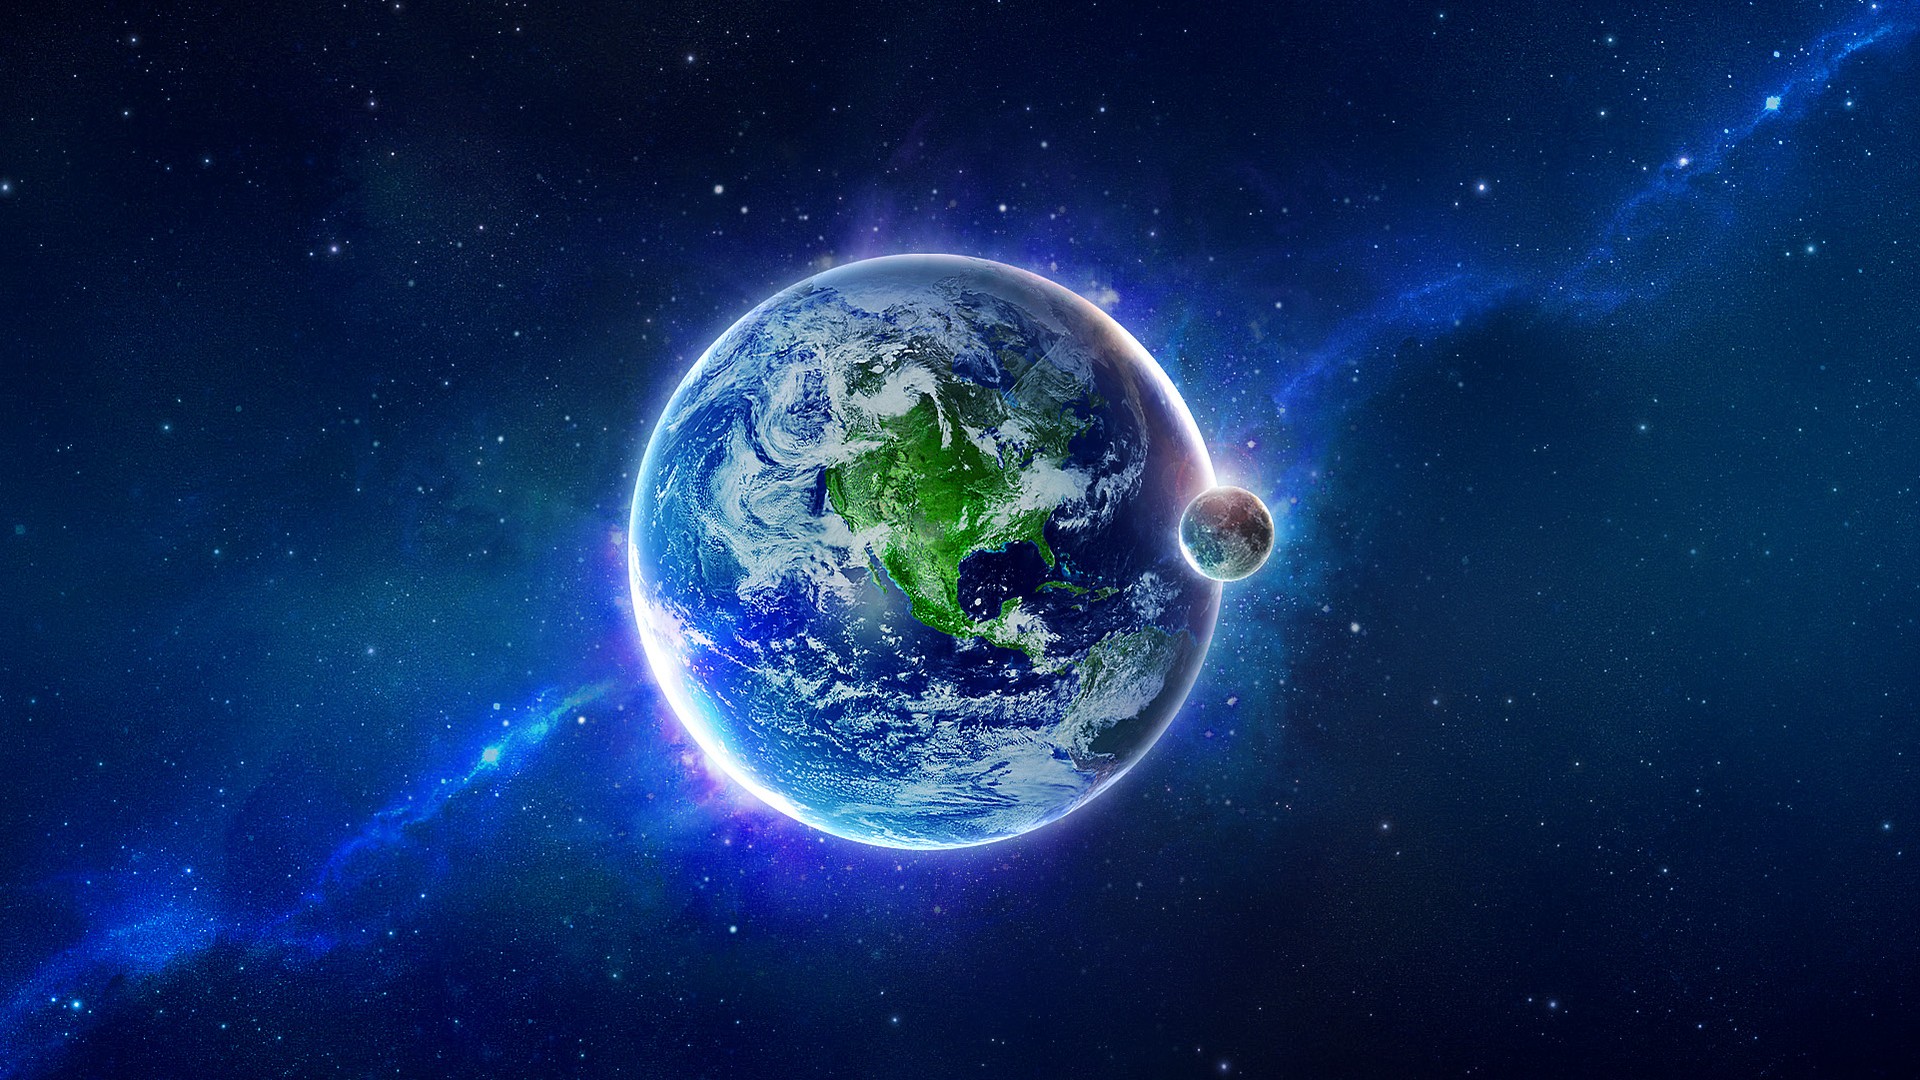 Обои планета космос земной шар картинки на рабочий стол на тему Космос - скачать бесплатно